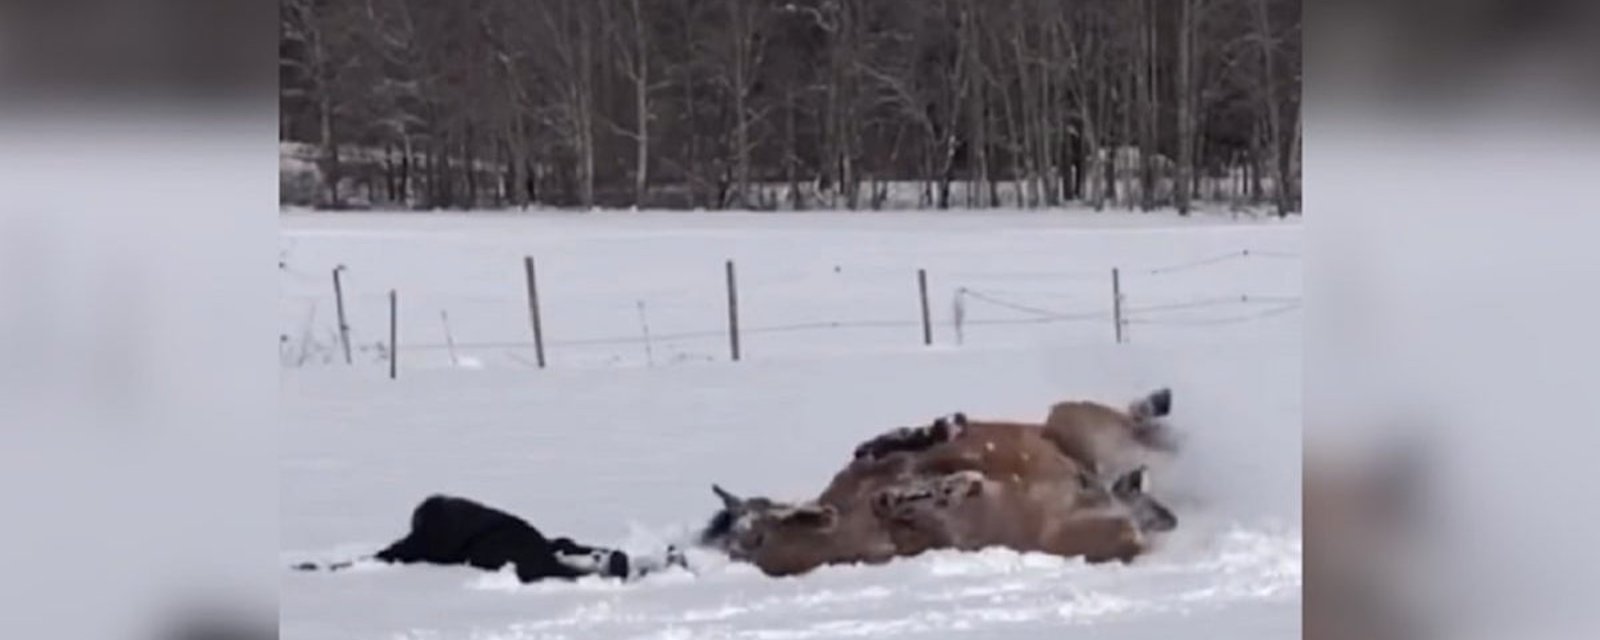 Deux chevaux qui s'amusent dans la neige, deux réactions différentes!